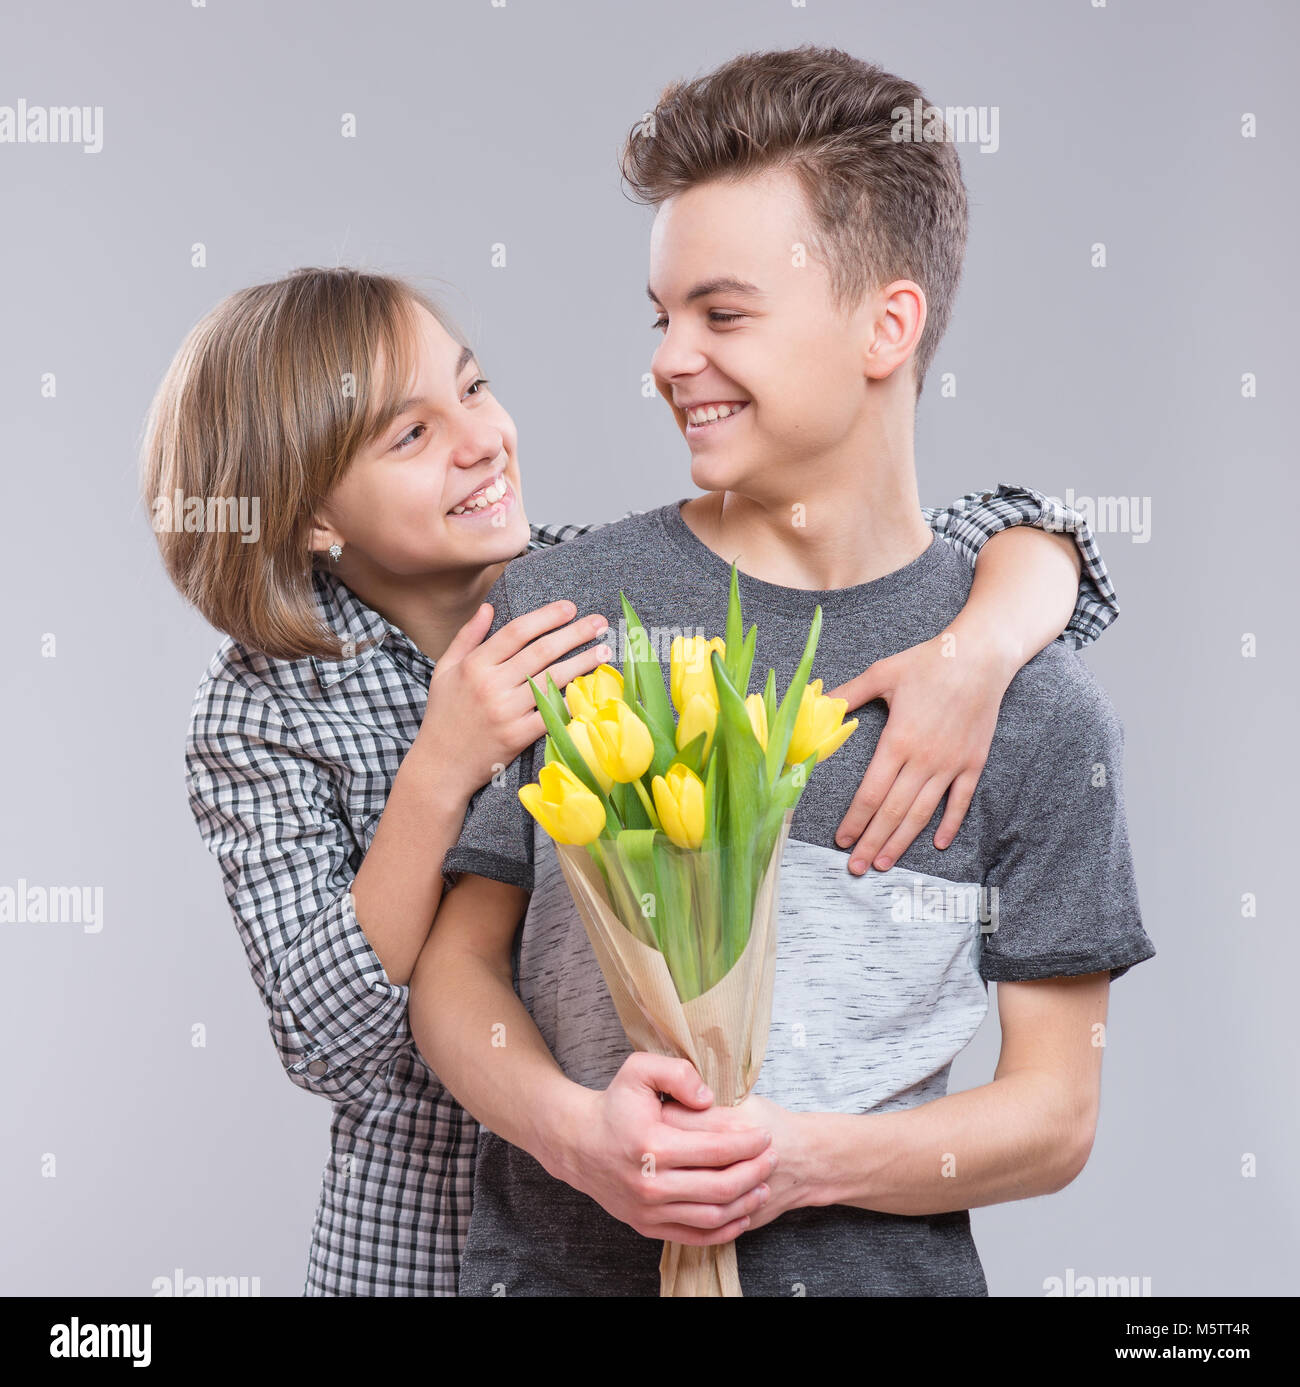 Fille et garçon avec des fleurs Banque D'Images